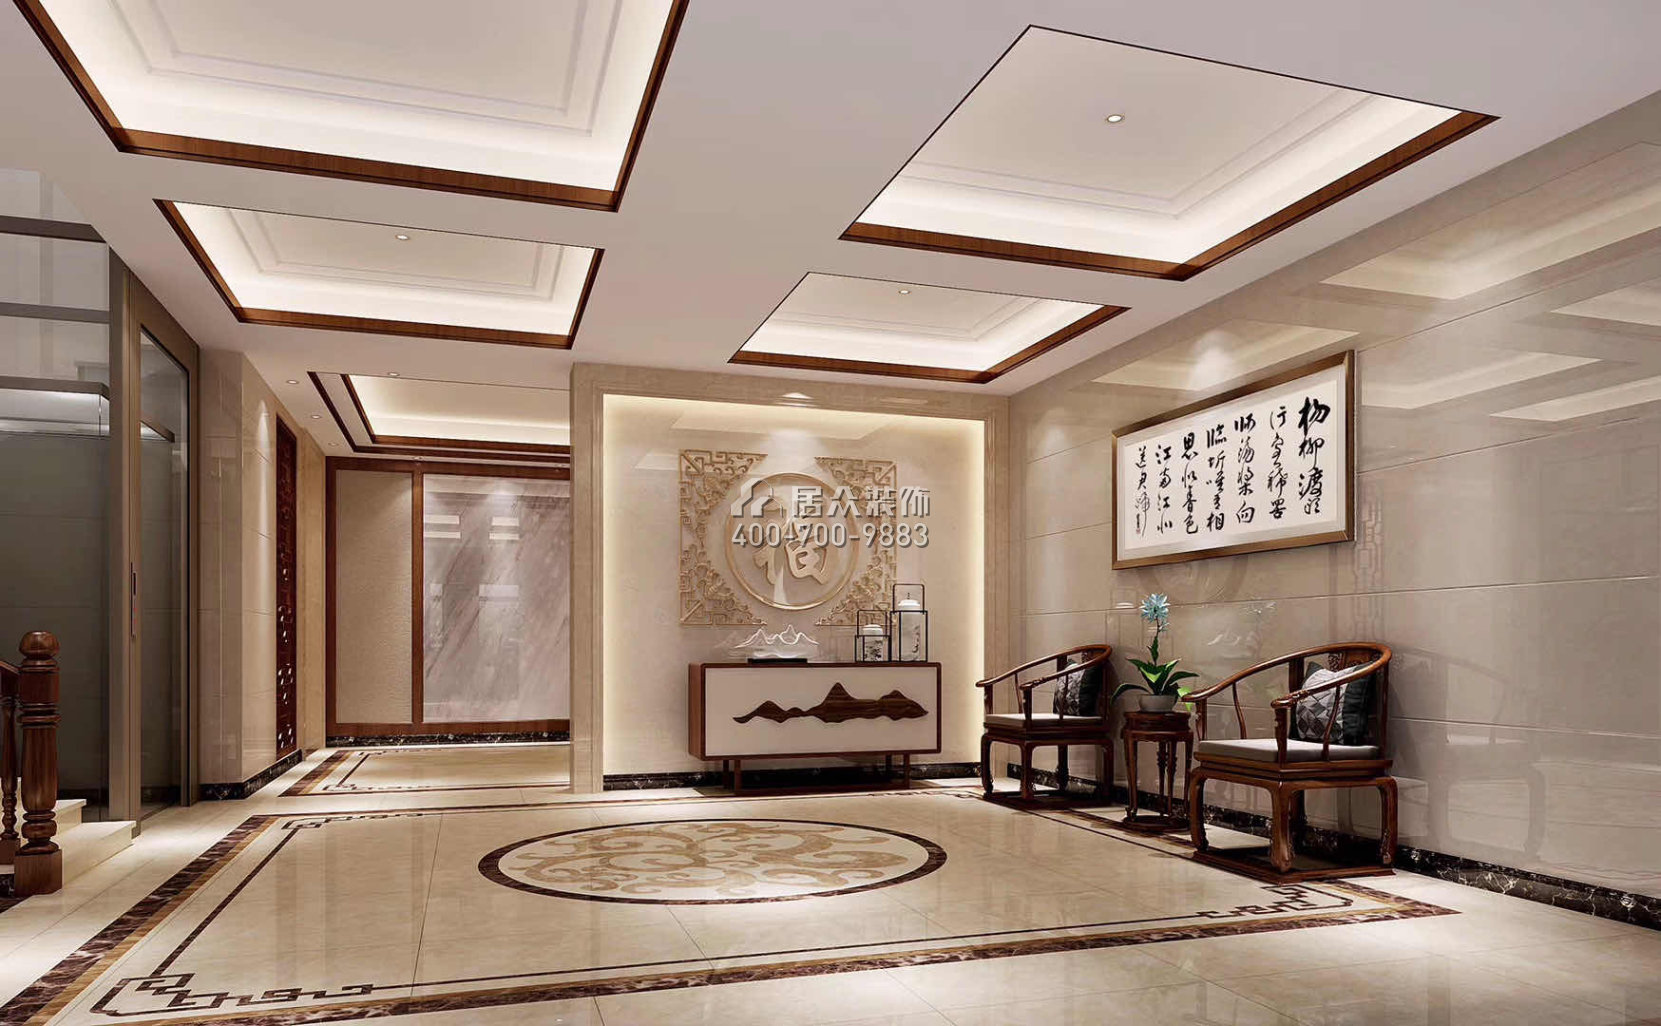 華桂園330平方米中式風格別墅戶型玄關裝修效果圖